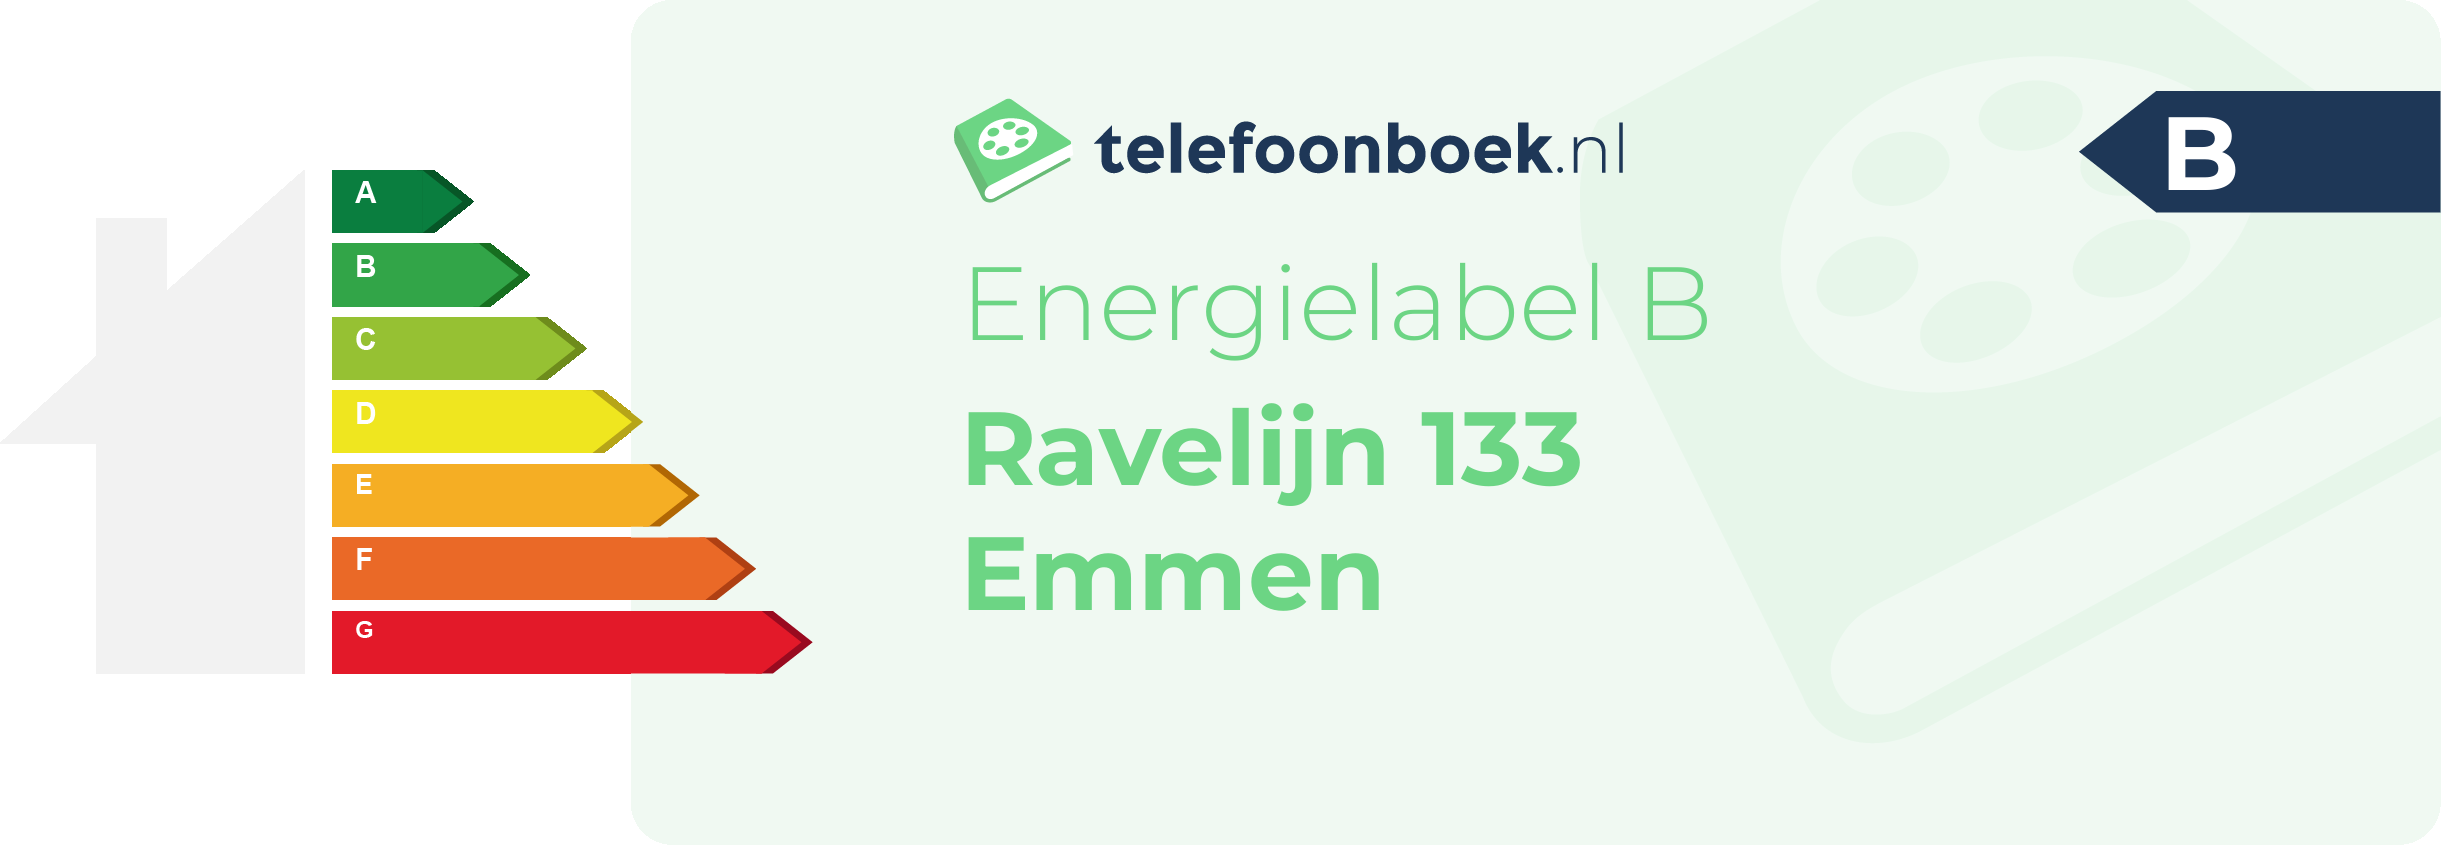 Energielabel Ravelijn 133 Emmen